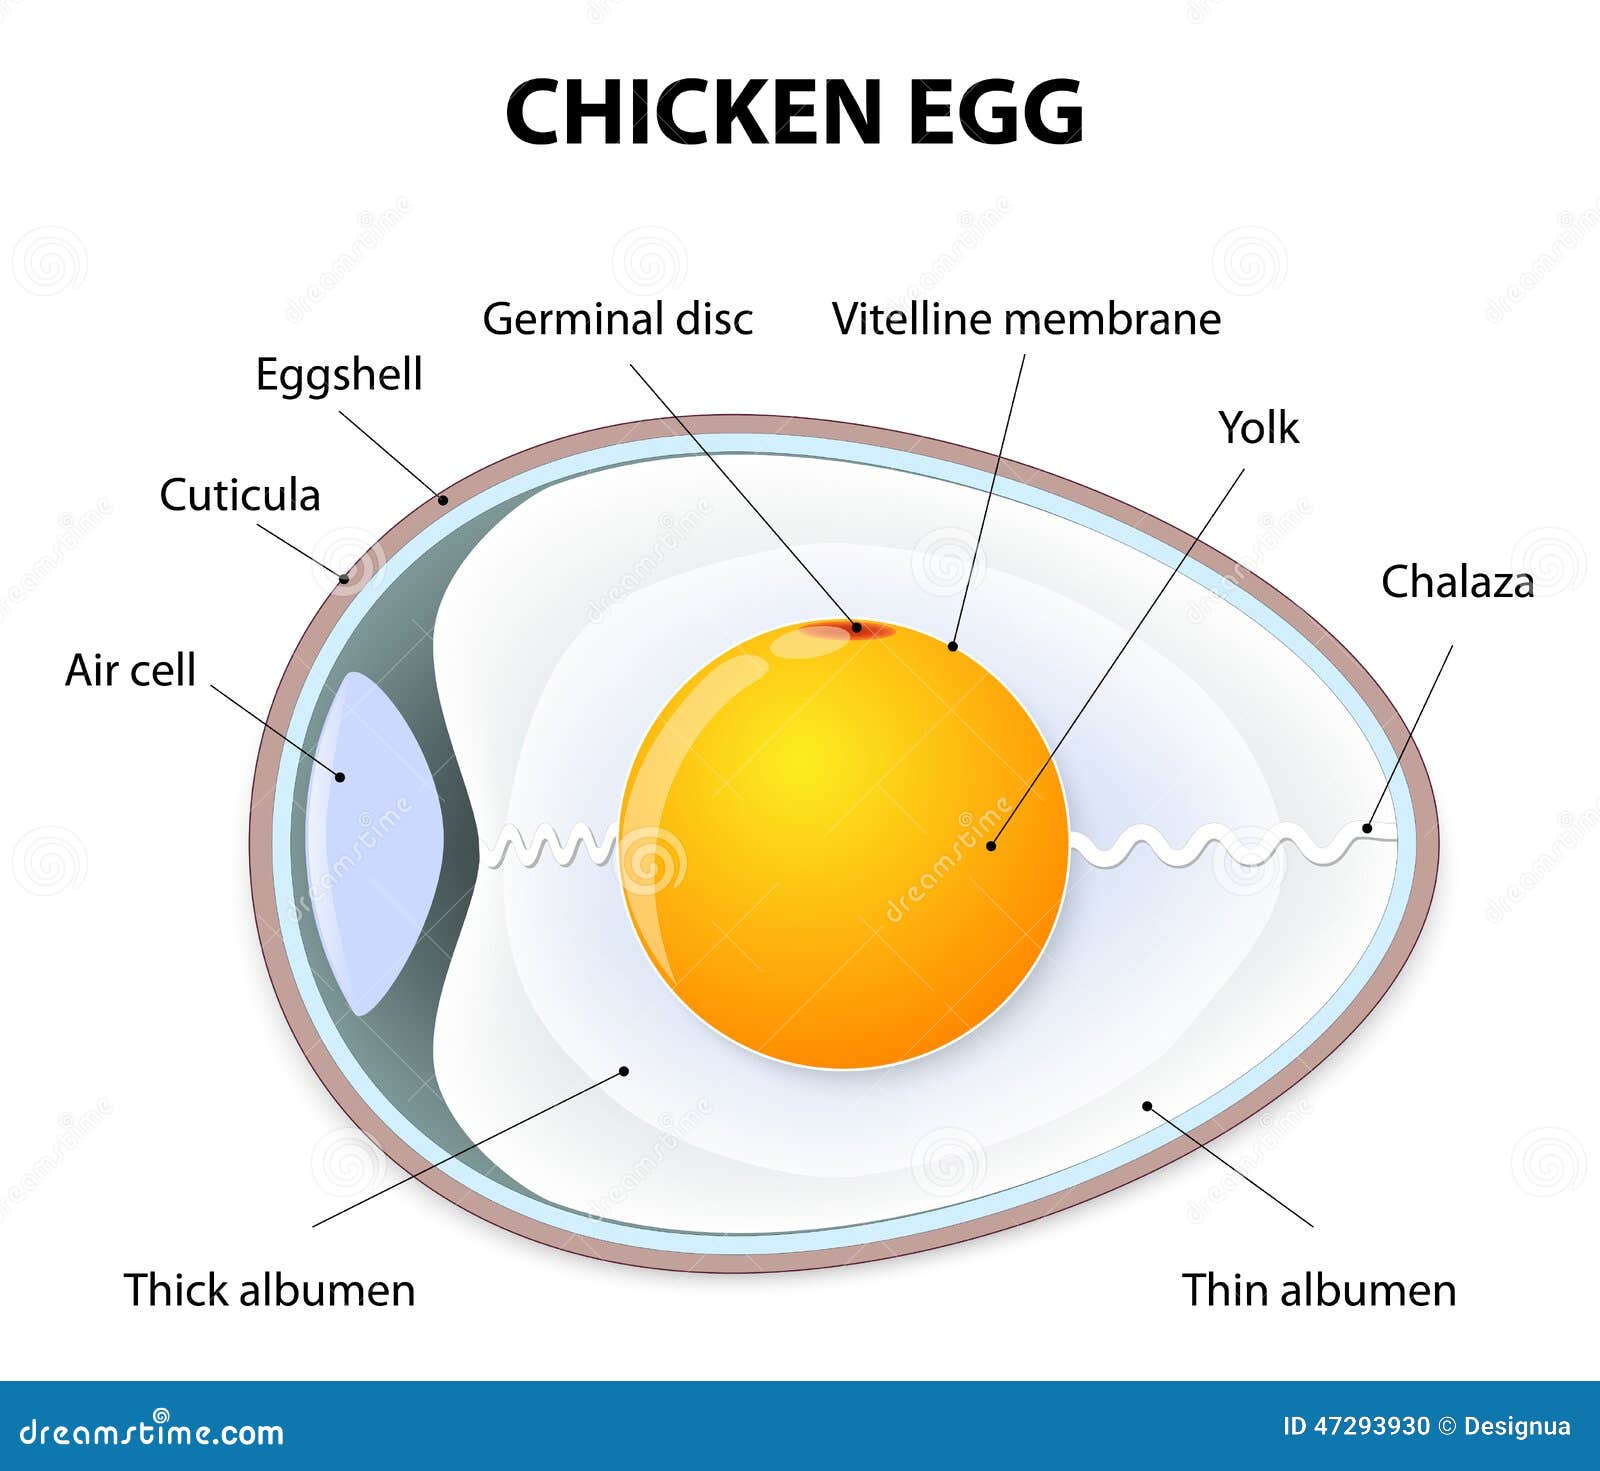 chicken egg anatomy